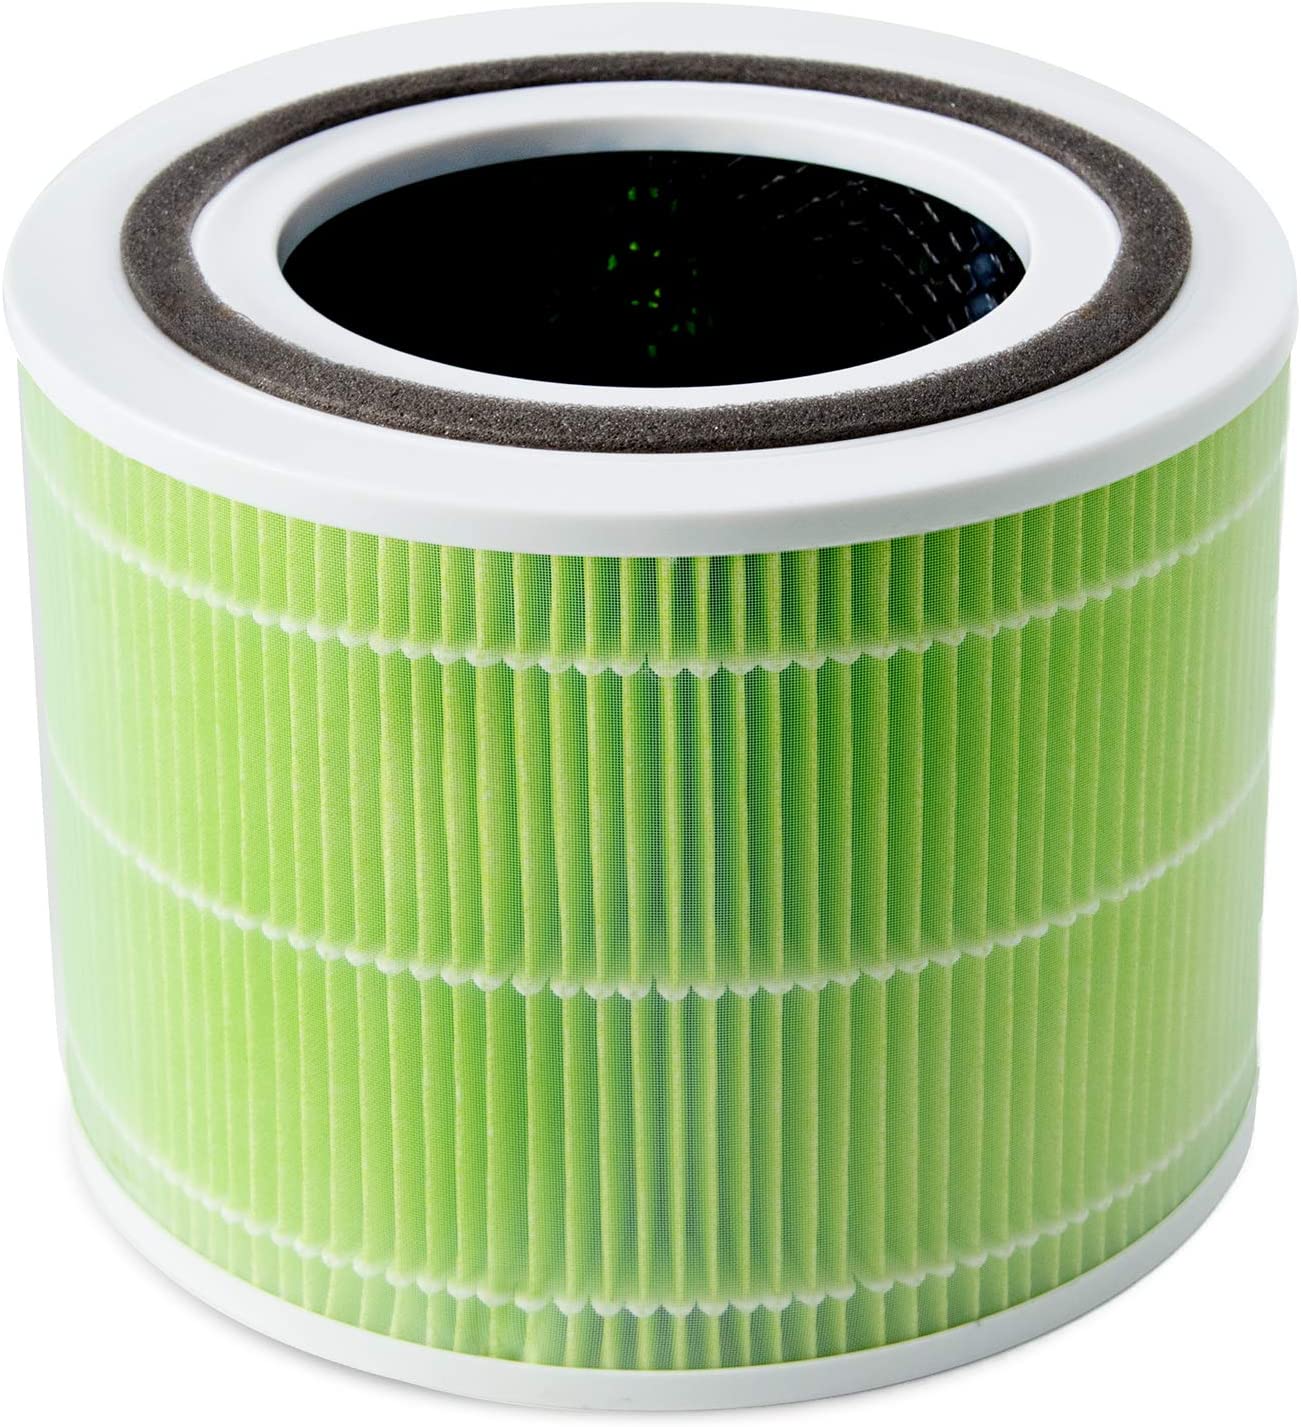 Фильтр для увлажнителя воздуха Levoit Air Cleaner Filter Core 300 True HEPA 3-Stage (Original Mold and Bacteria Filter) в интернет-магазине, главное фото